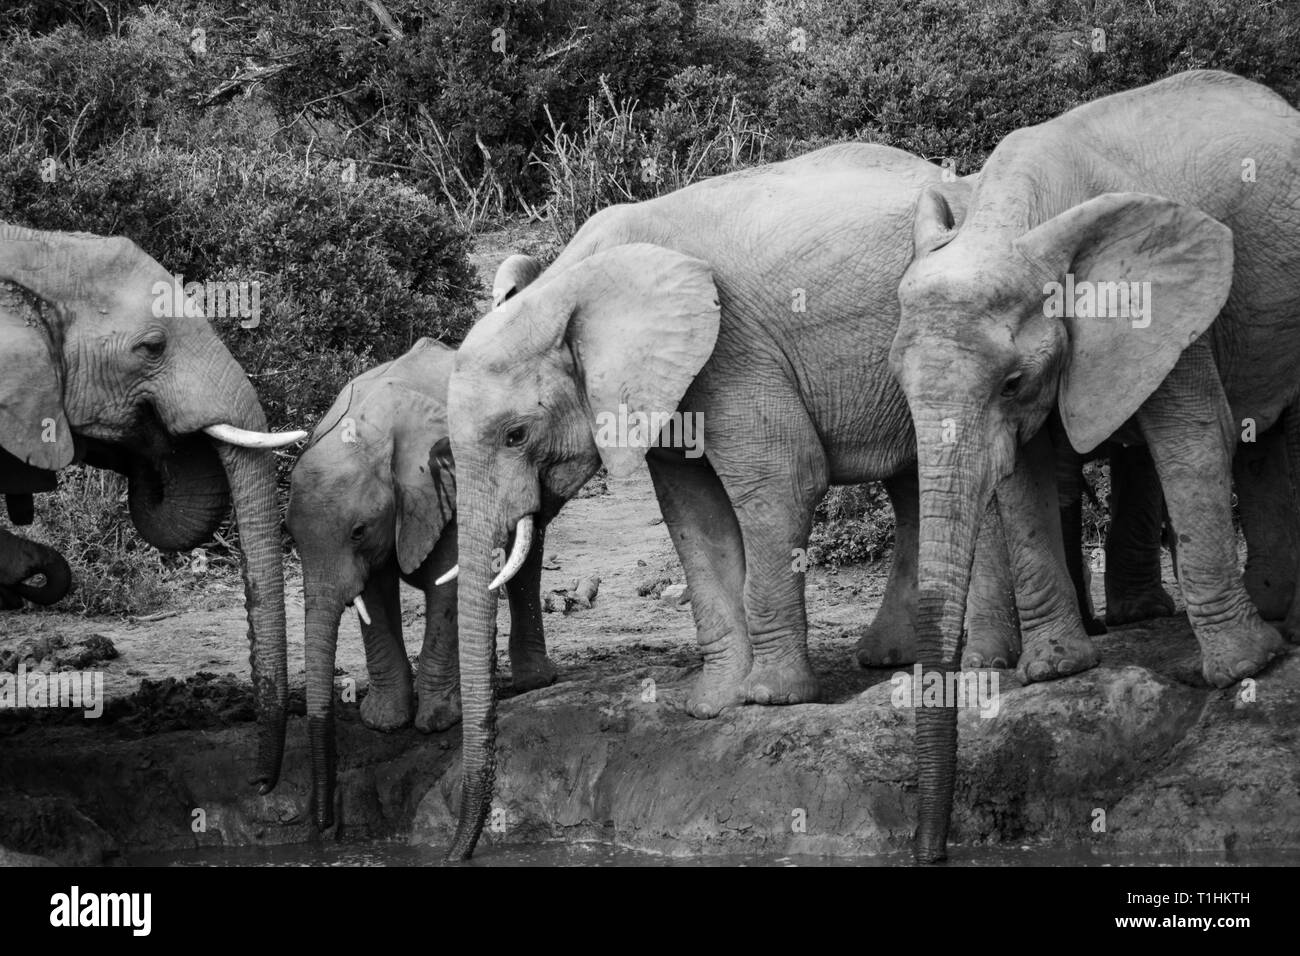 El Elefante y el elefante. Kenya. Safari en África. El elefante africano. Animales de África. Viajar a Kenia. Familia de elefantes. Foto de stock